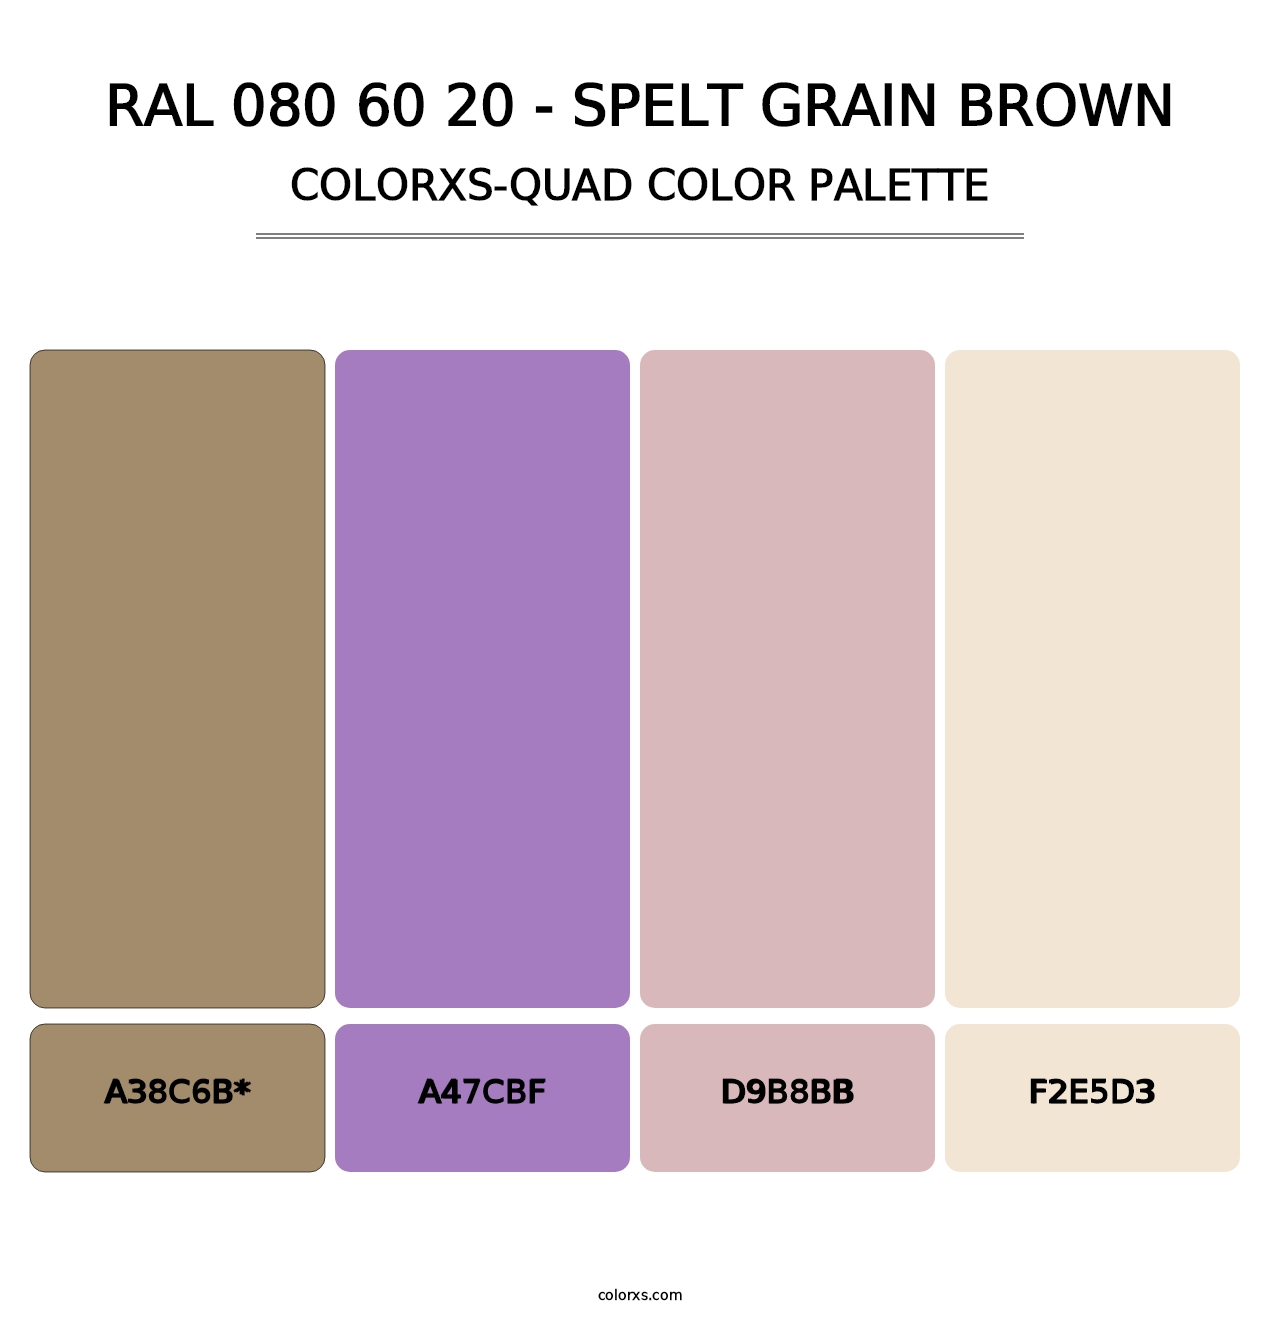 RAL 080 60 20 - Spelt Grain Brown - Colorxs Quad Palette